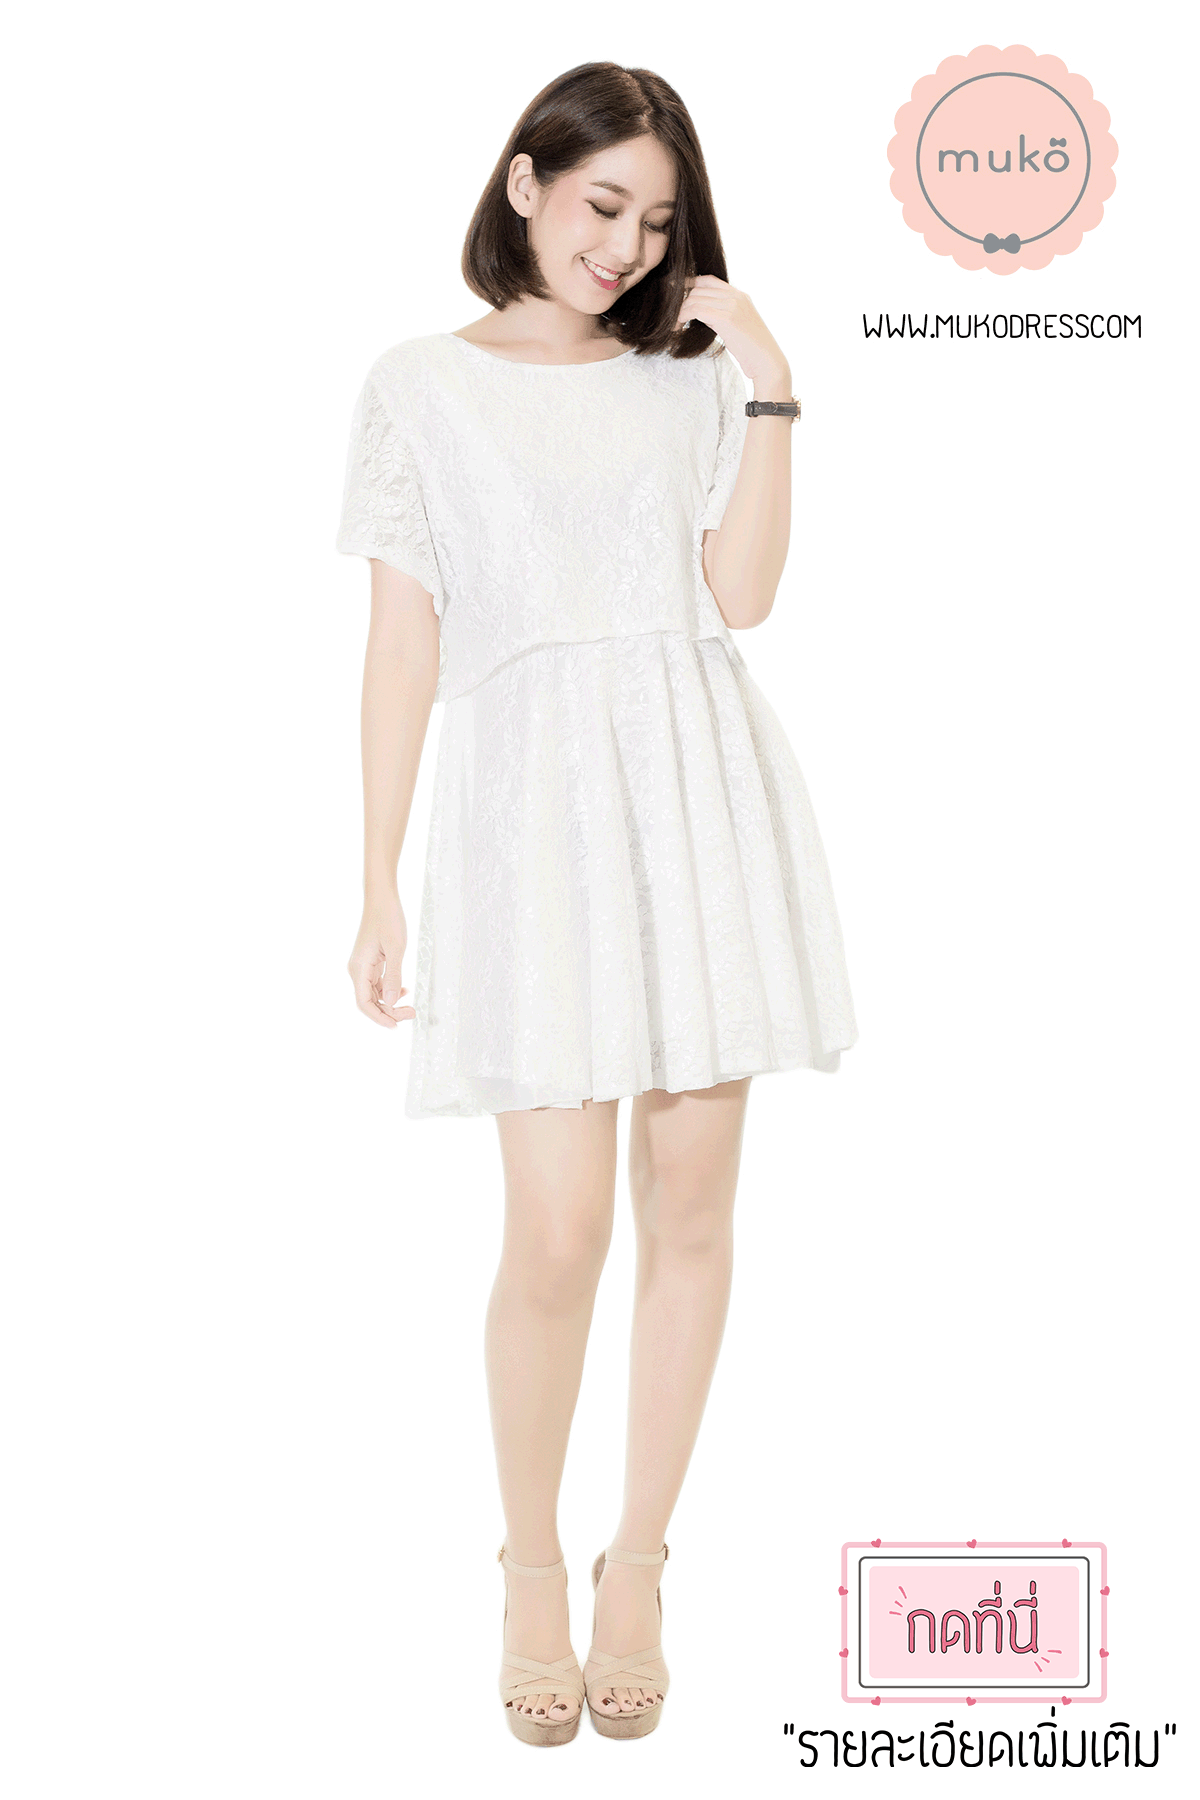 Muko Nico Lace Dress เดรสคลุมท้อง เปิดให้นม DZ22-007 ขาว